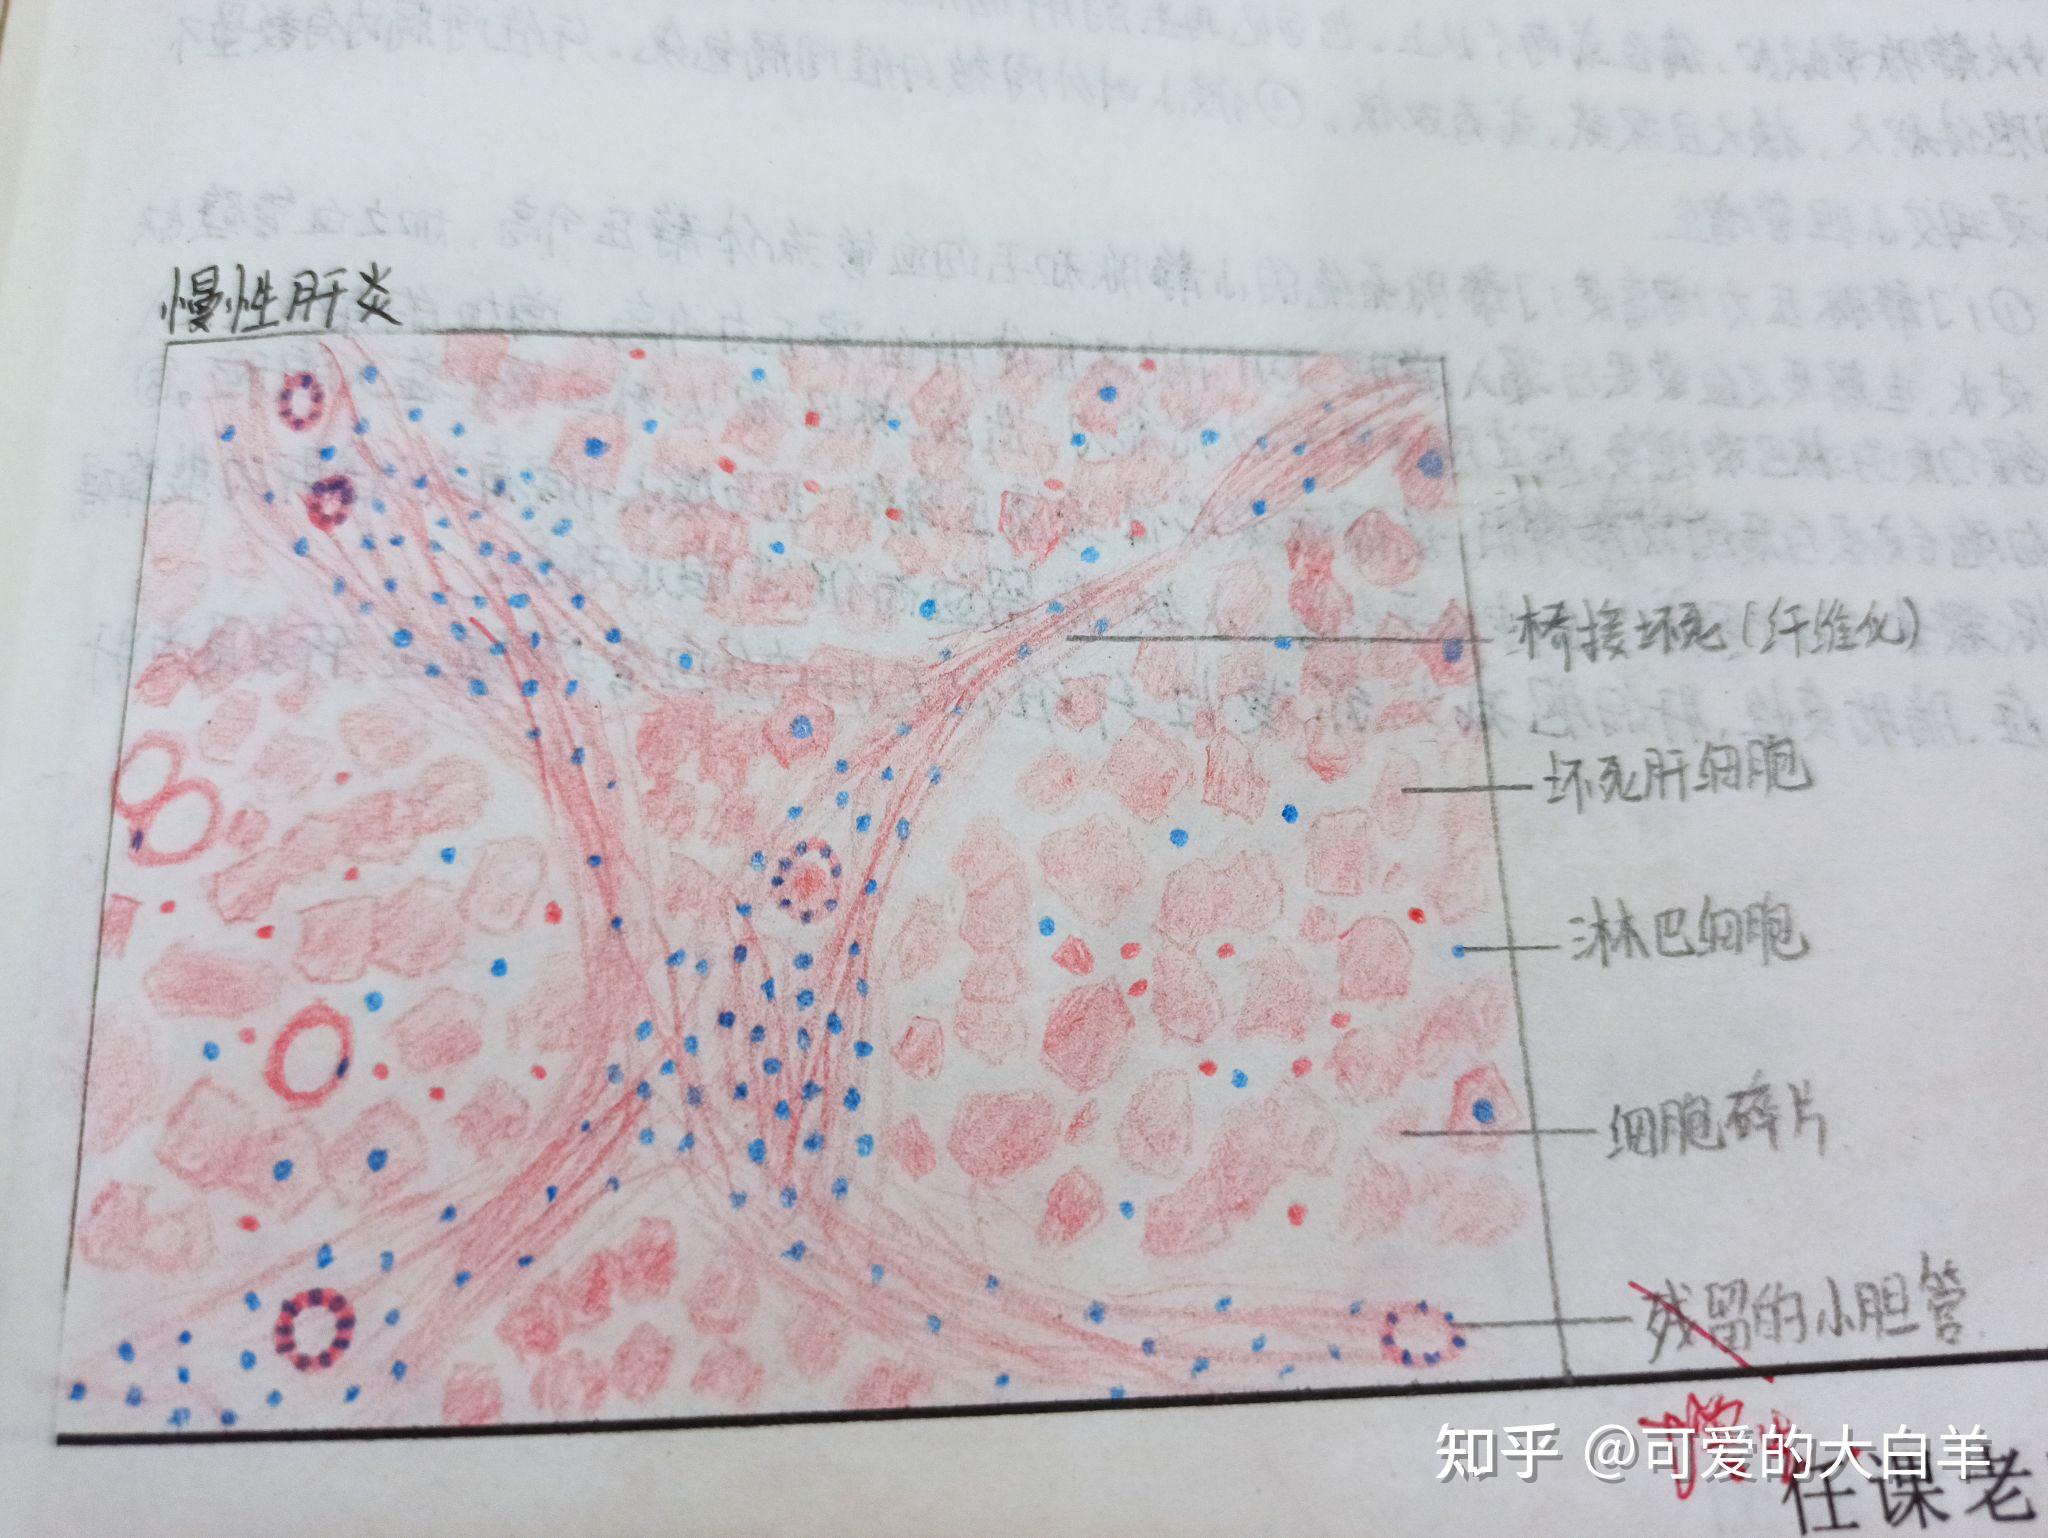 肾小管红蓝铅笔图图片